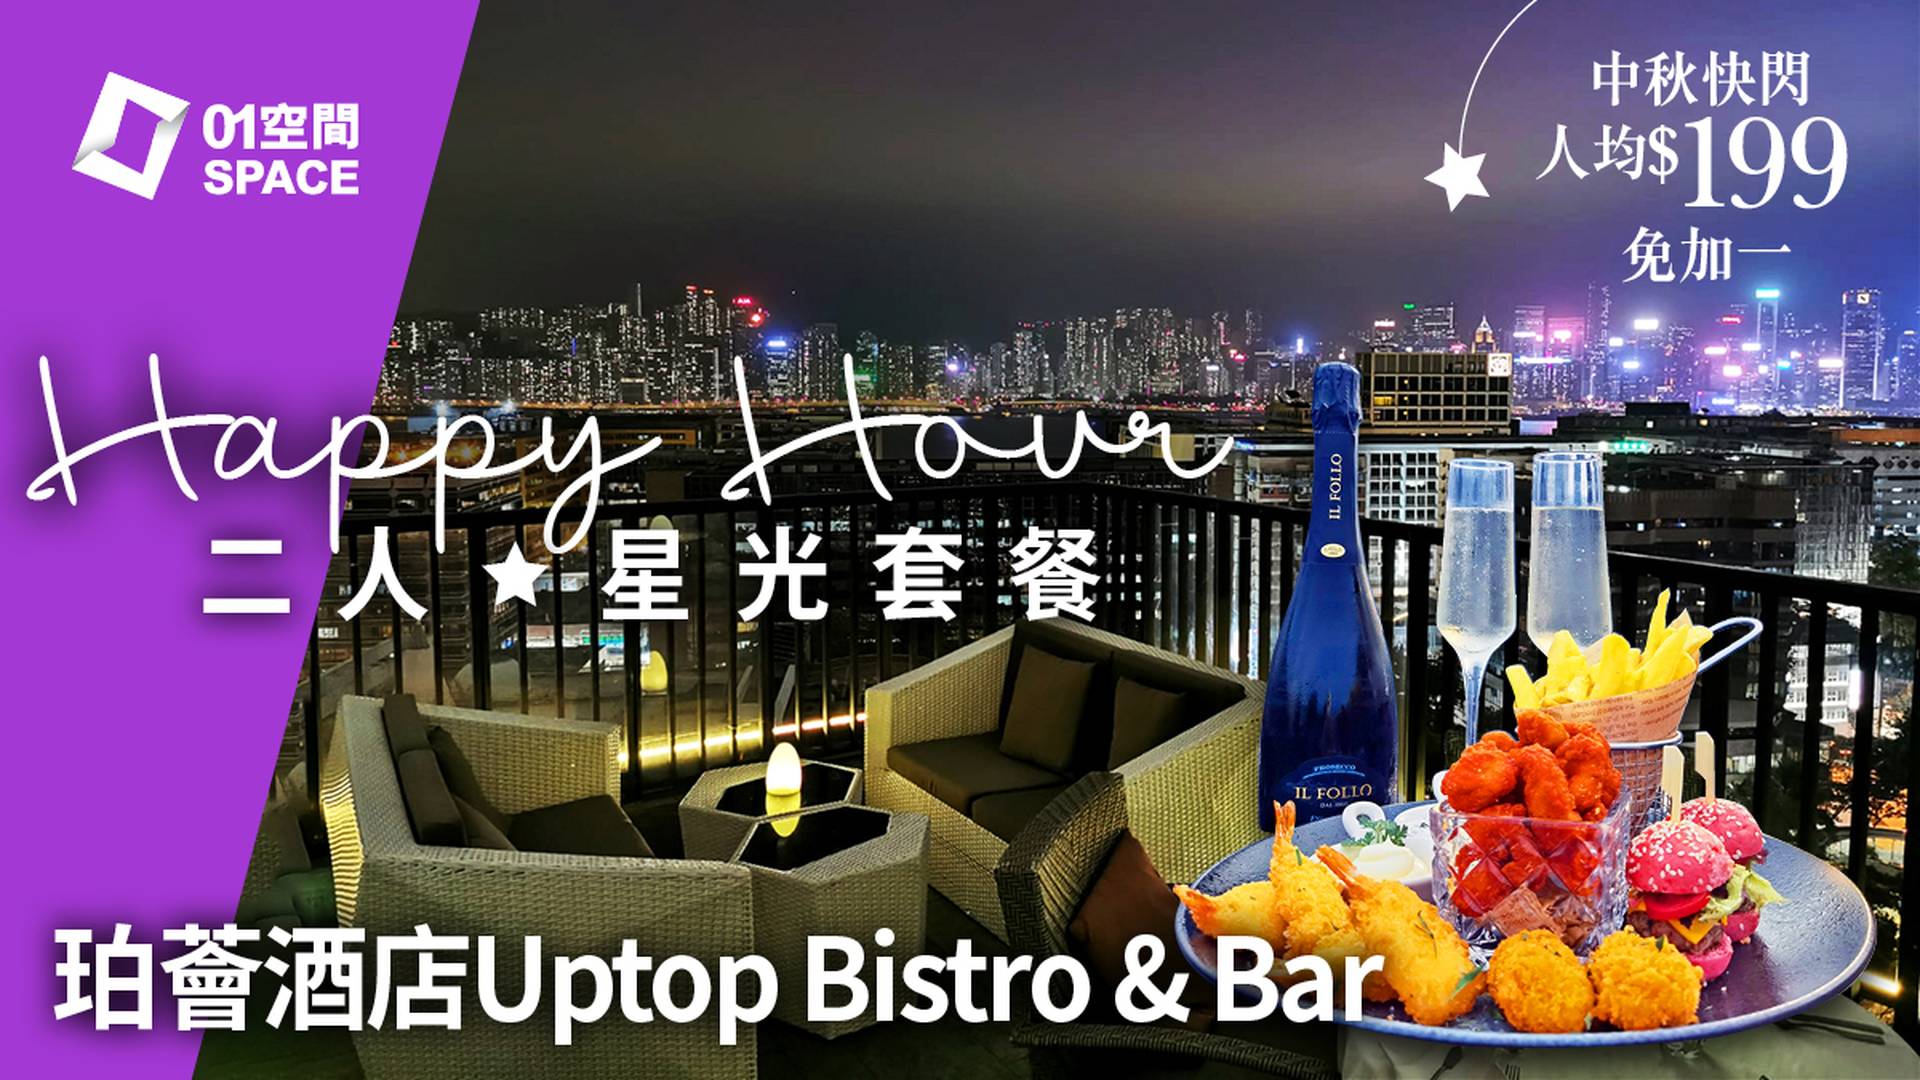 【快閃】尖沙咀珀薈酒店 | 海景Uptop Bistro & Bar｜Sky Deck ⼆⼈星光套餐｜人均$119! 